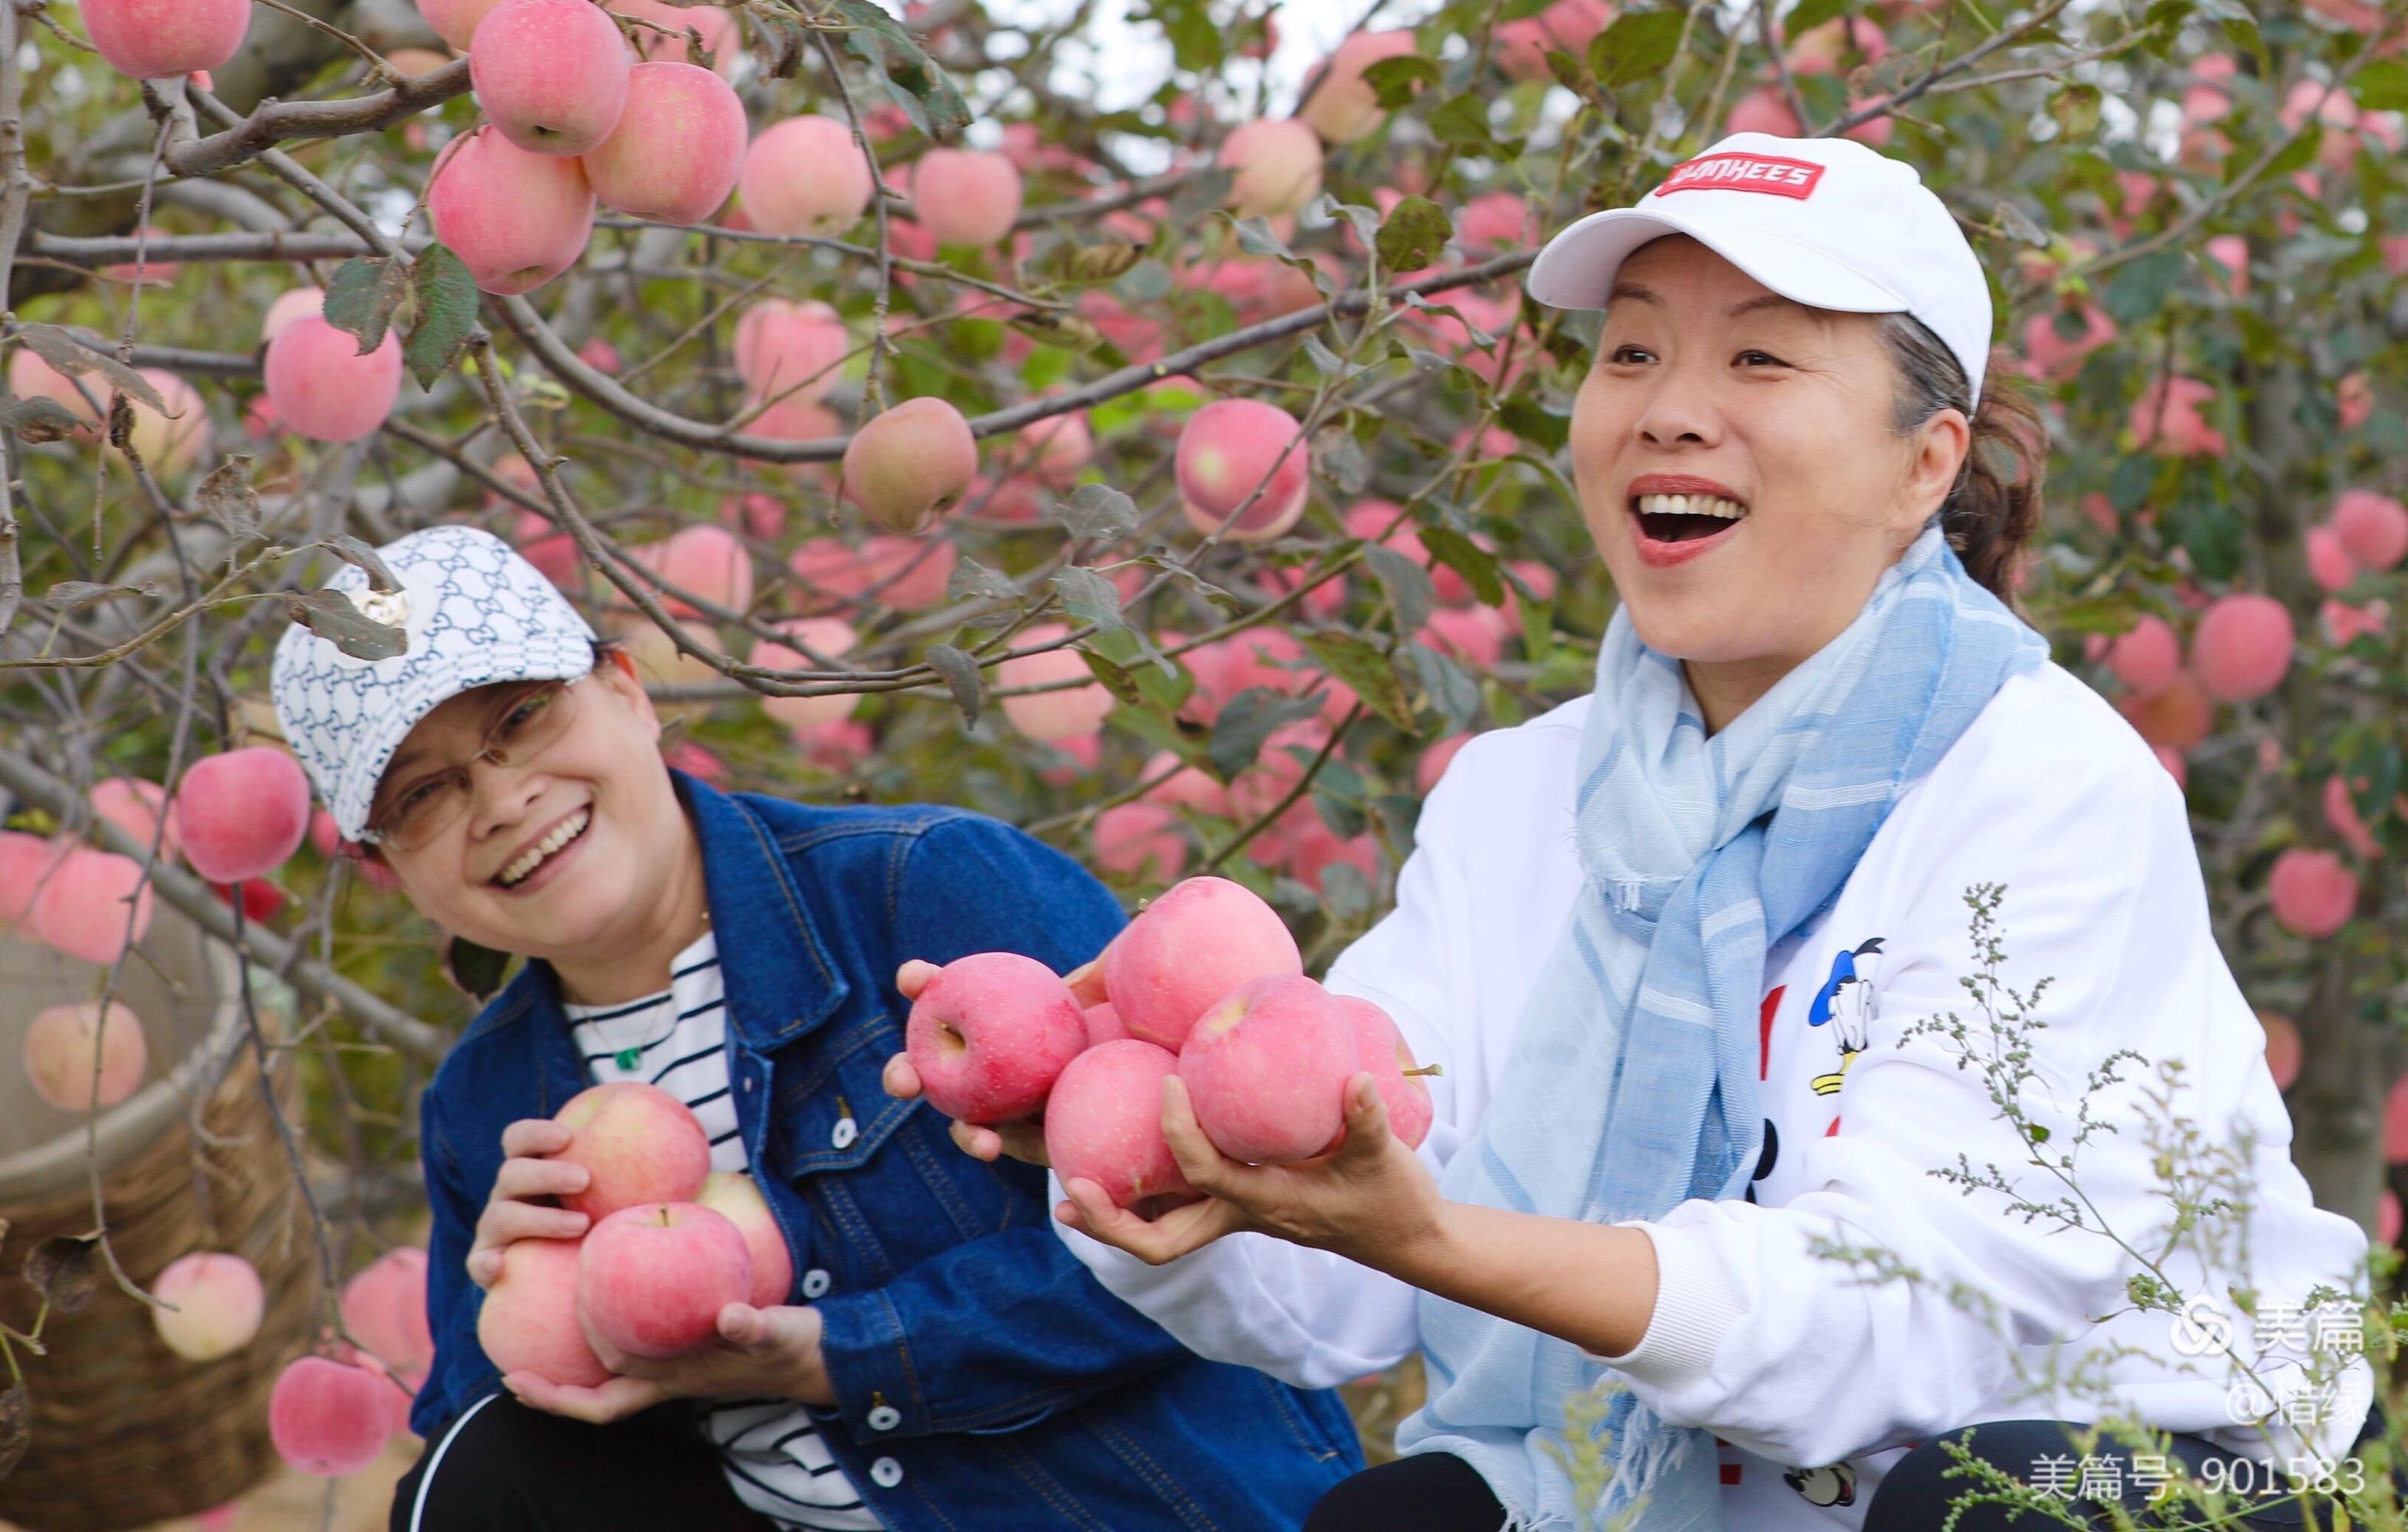 游客采摘苹果新闻采摘水果让游客体验快乐的宣传语